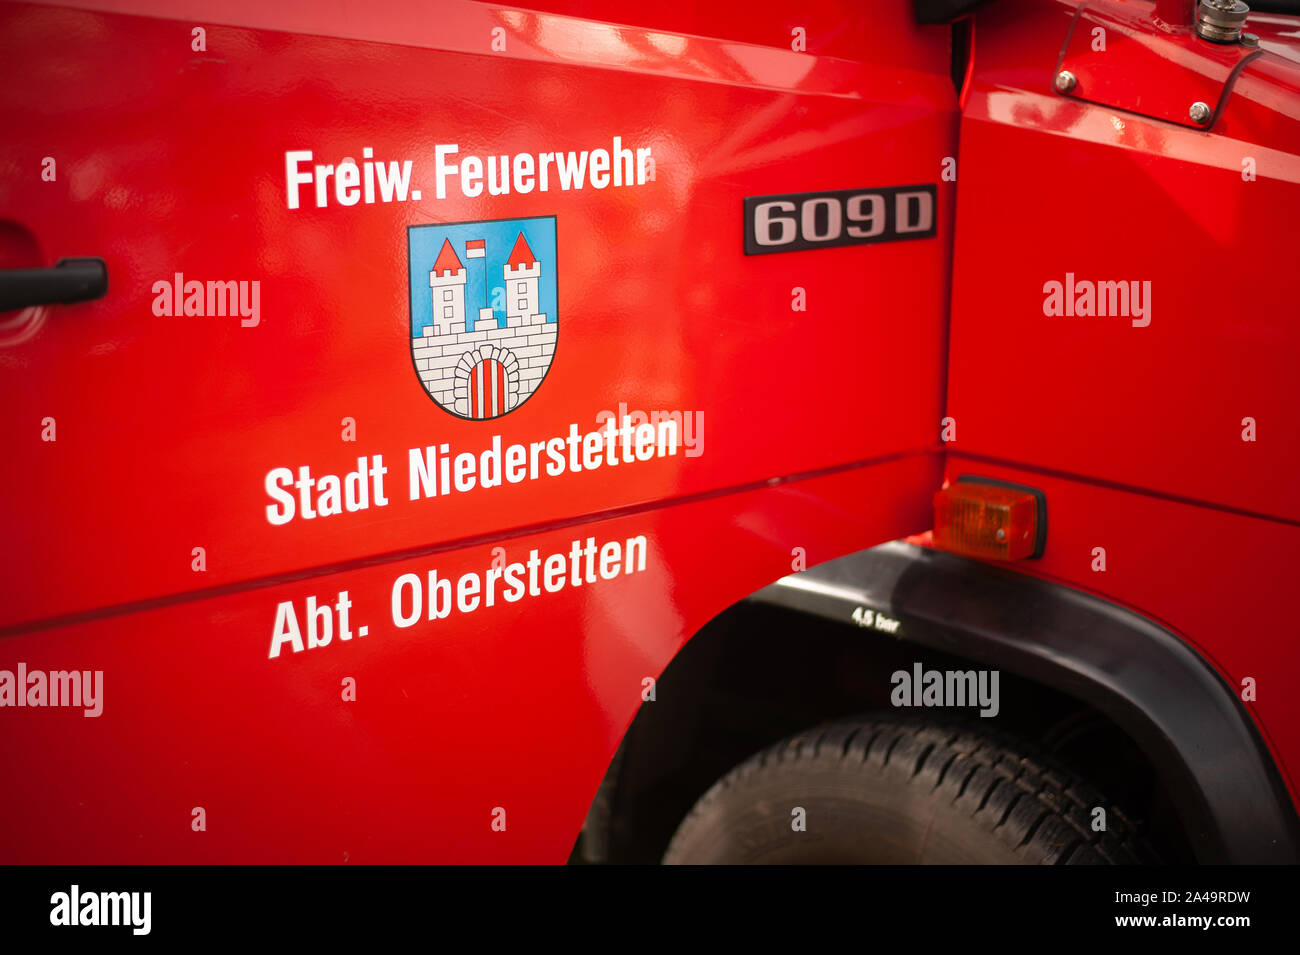 Germany, Baden Wurttemberg, Niederstetten. September 2019. Door of firefighters truck with text Freiw. Feuerwehr Stadt Niederstetten Abt. Oberstetten, Stock Photo